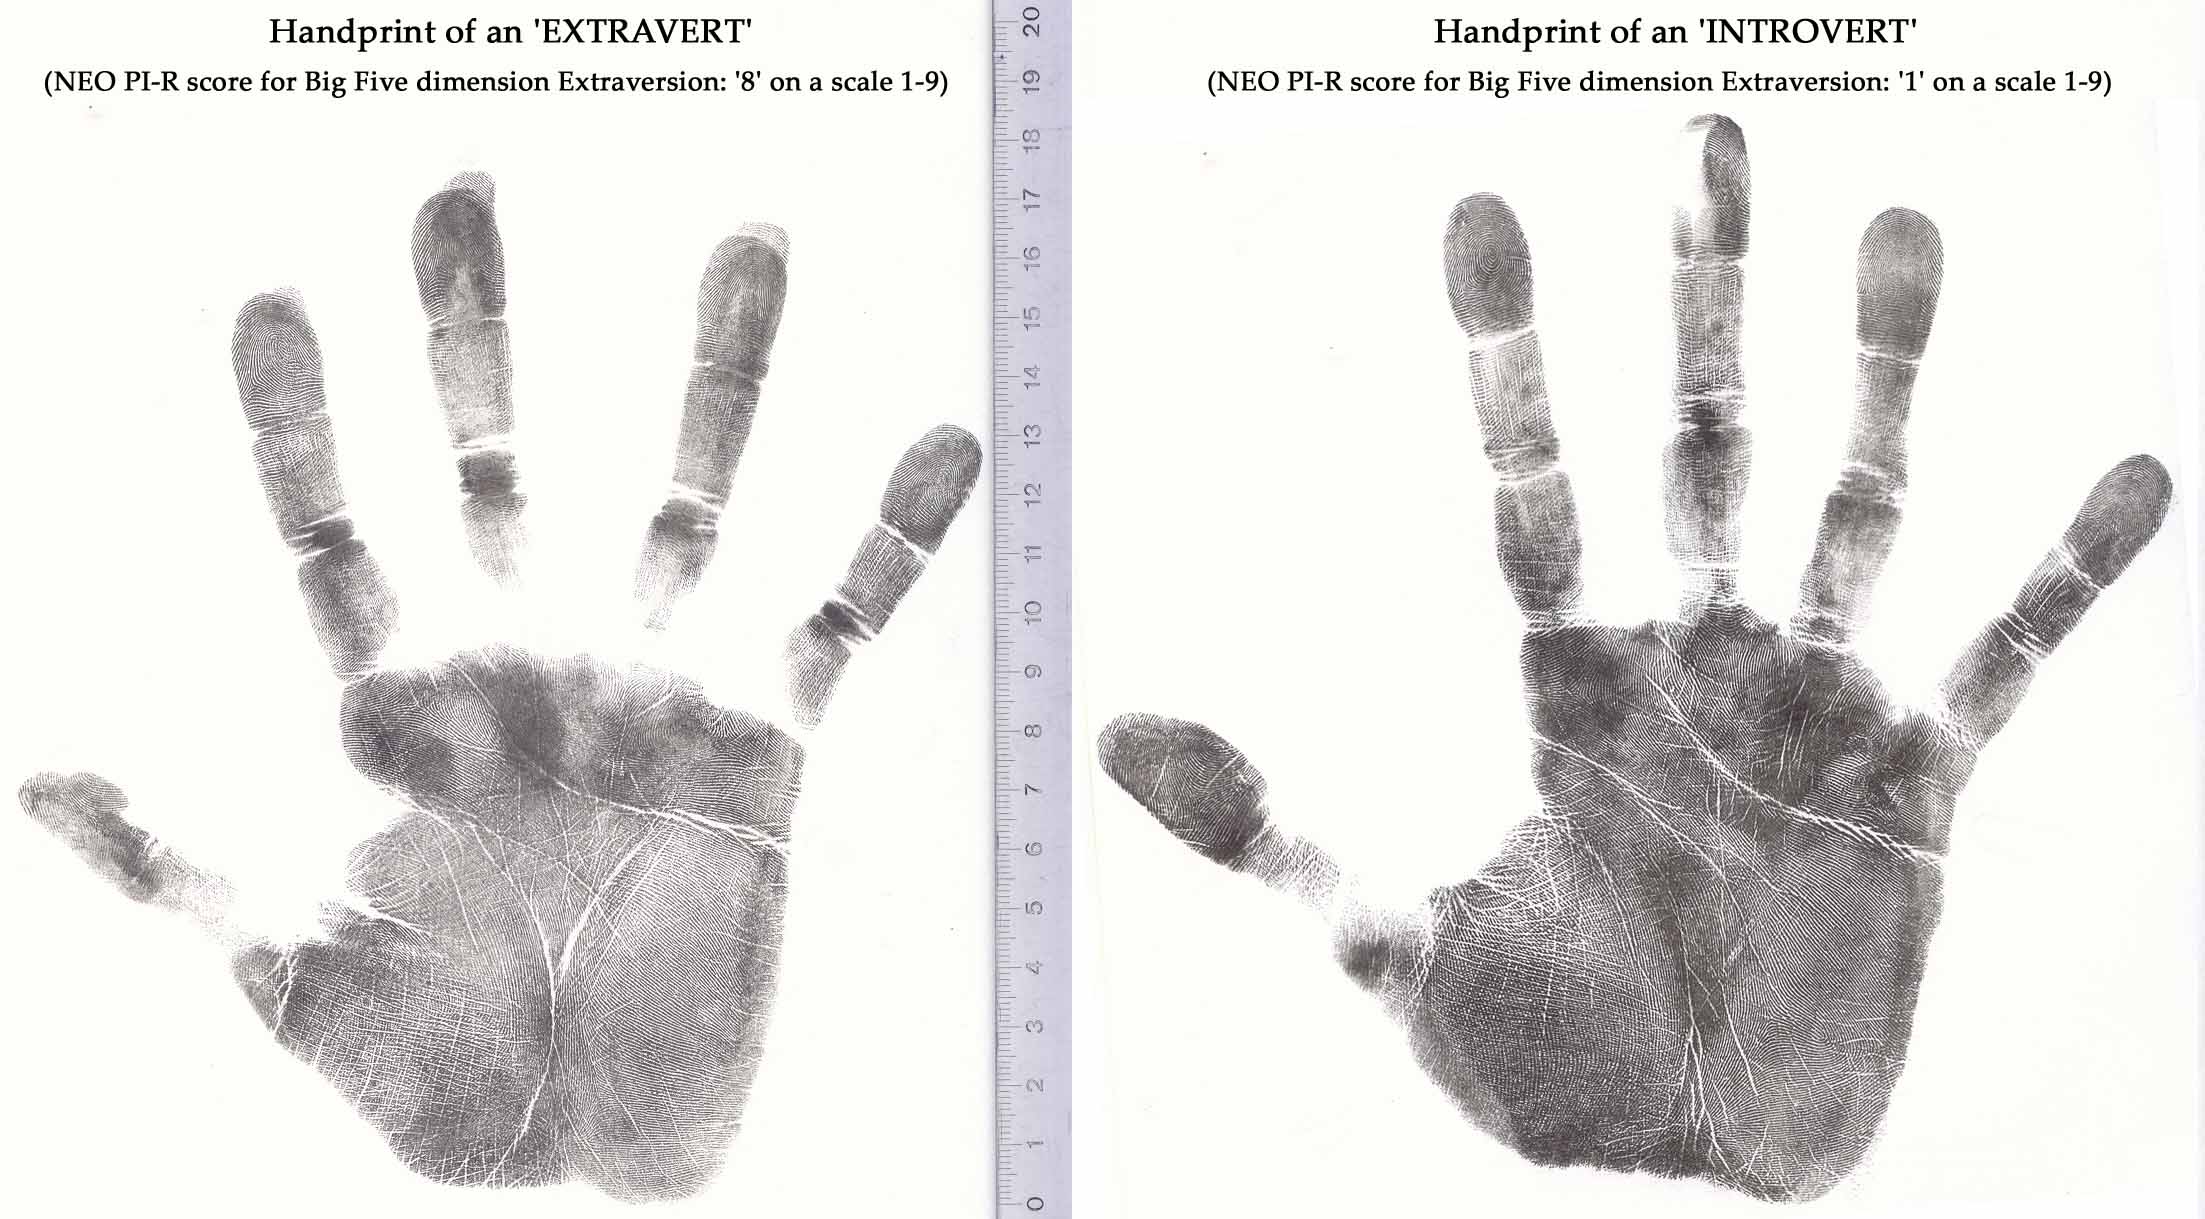 The hand print of an extravert + the handprint of an introvert.